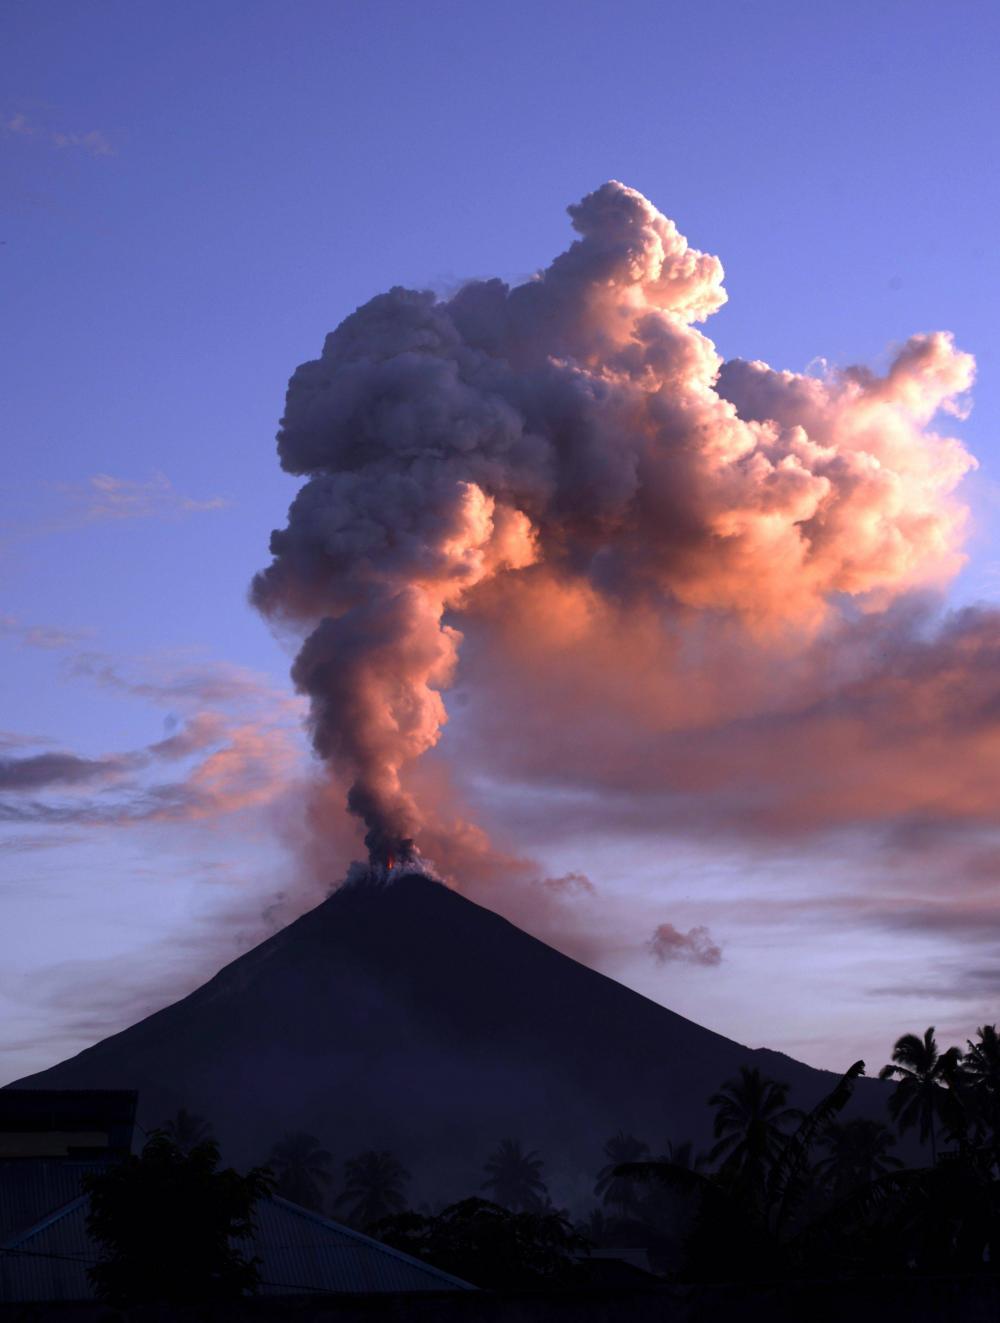 soputan volcano eruption, soputan volcano eruption pictures, soputan volcano eruption videos, soputan volcano eruption january 2016, soputan volcano eruption january 2016 pictures and videos